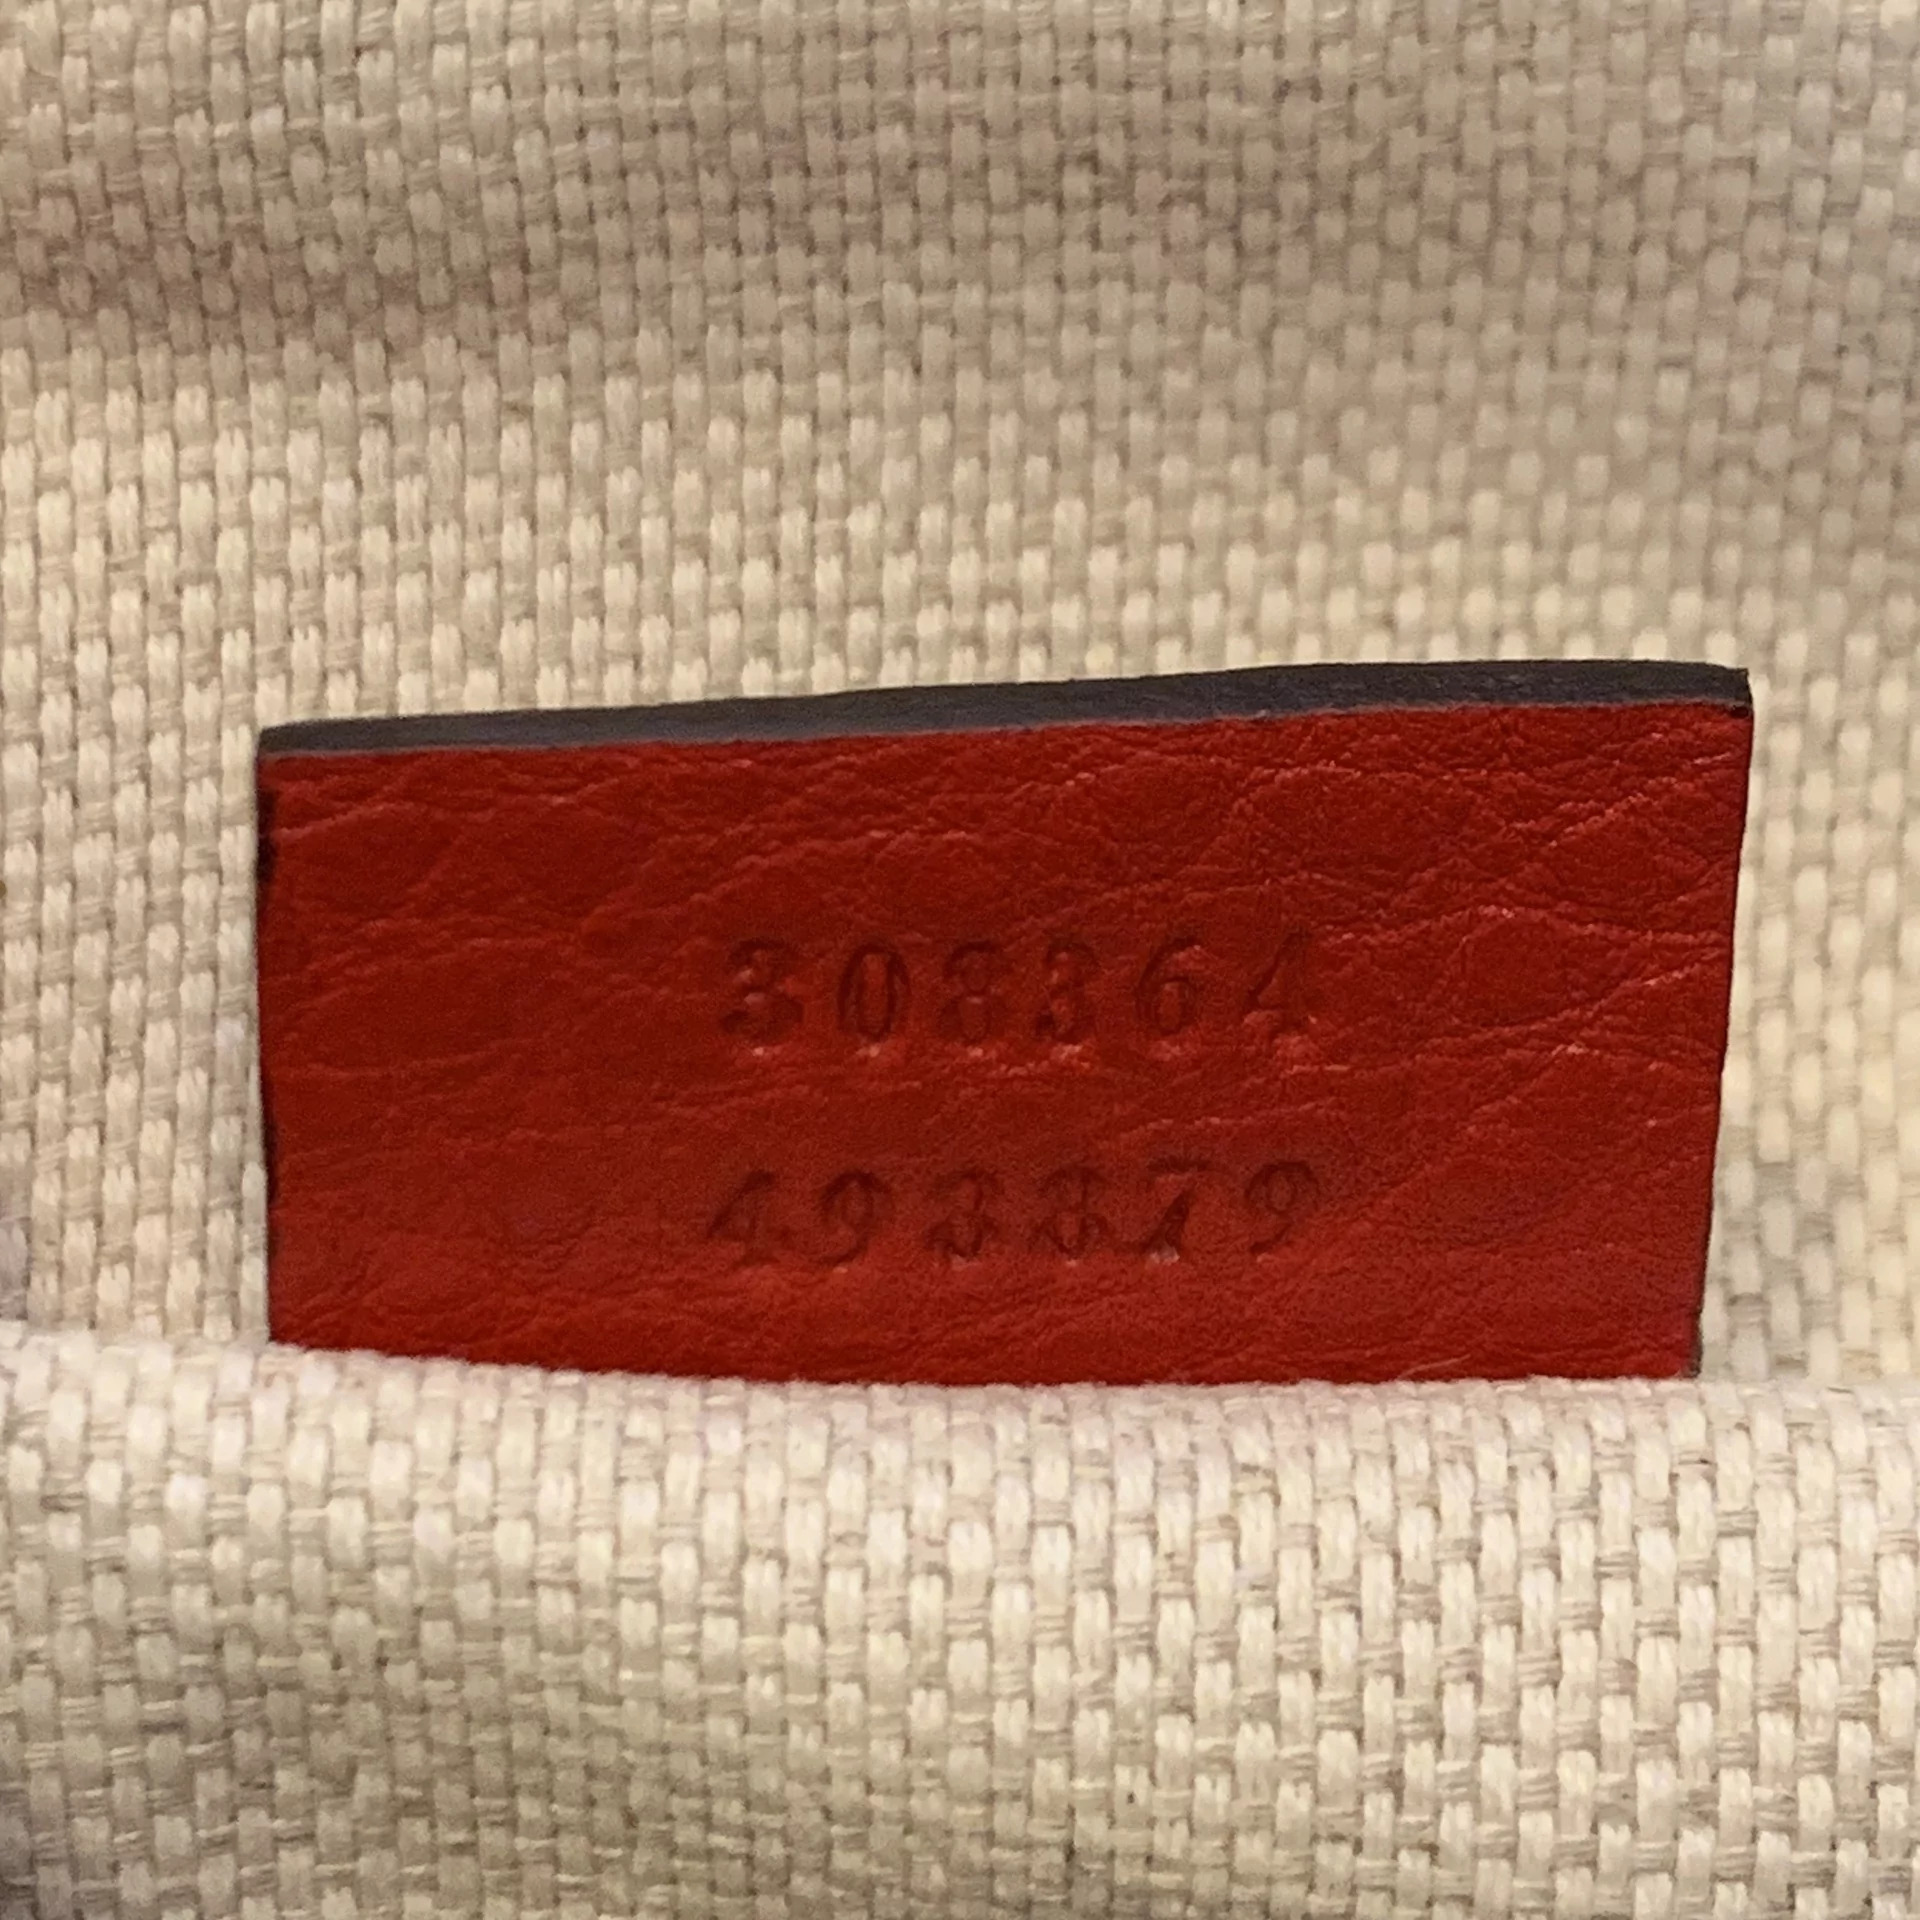 Bolsa Gucci Soho Disco Vermelha